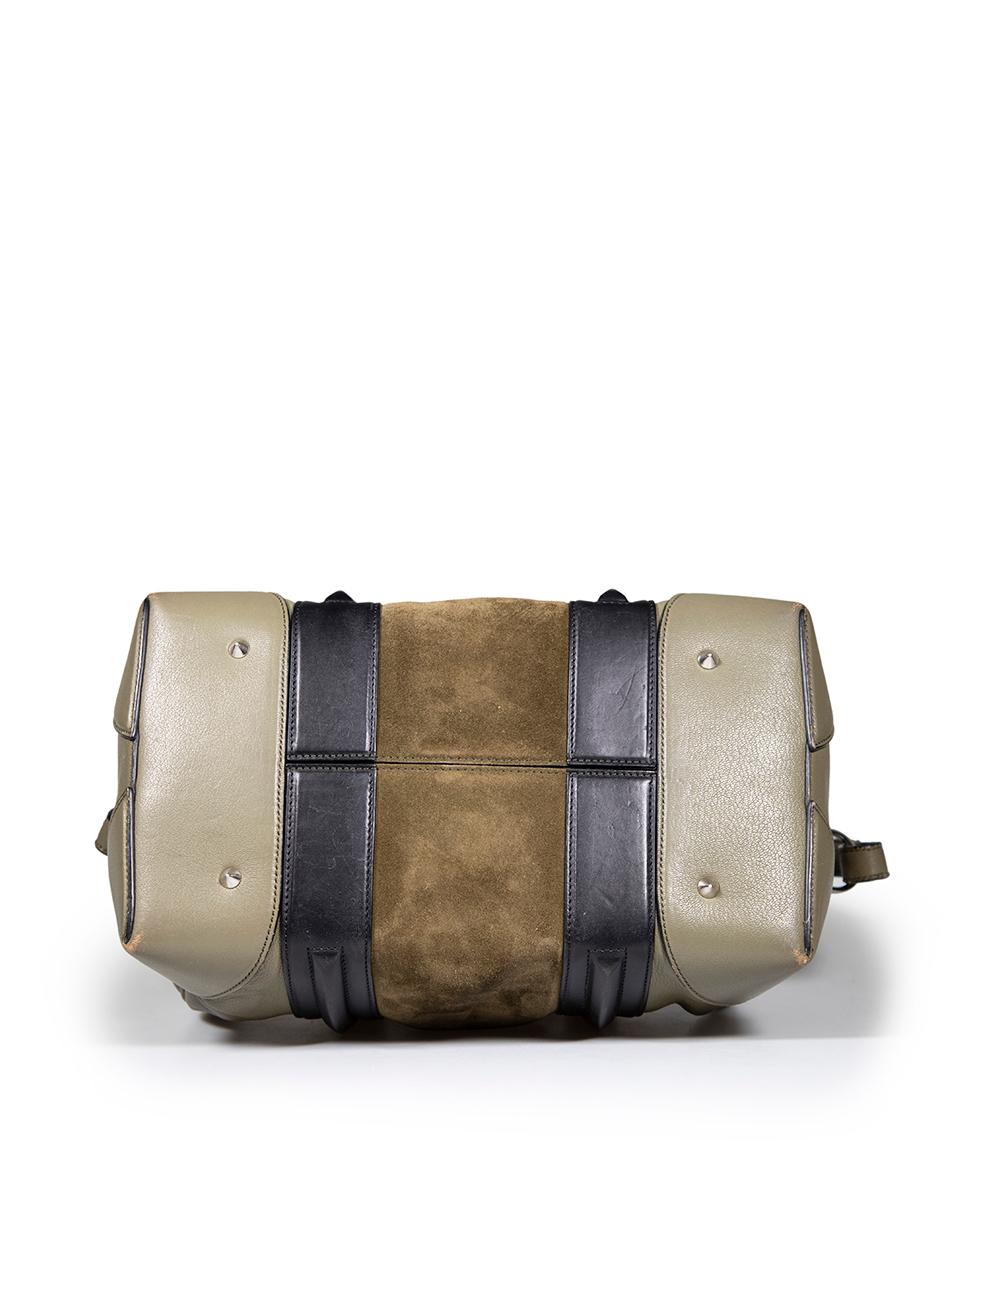 Givenchy sac porté épaule Lucrezia en cuir kaki, taille moyenne Pour femmes en vente